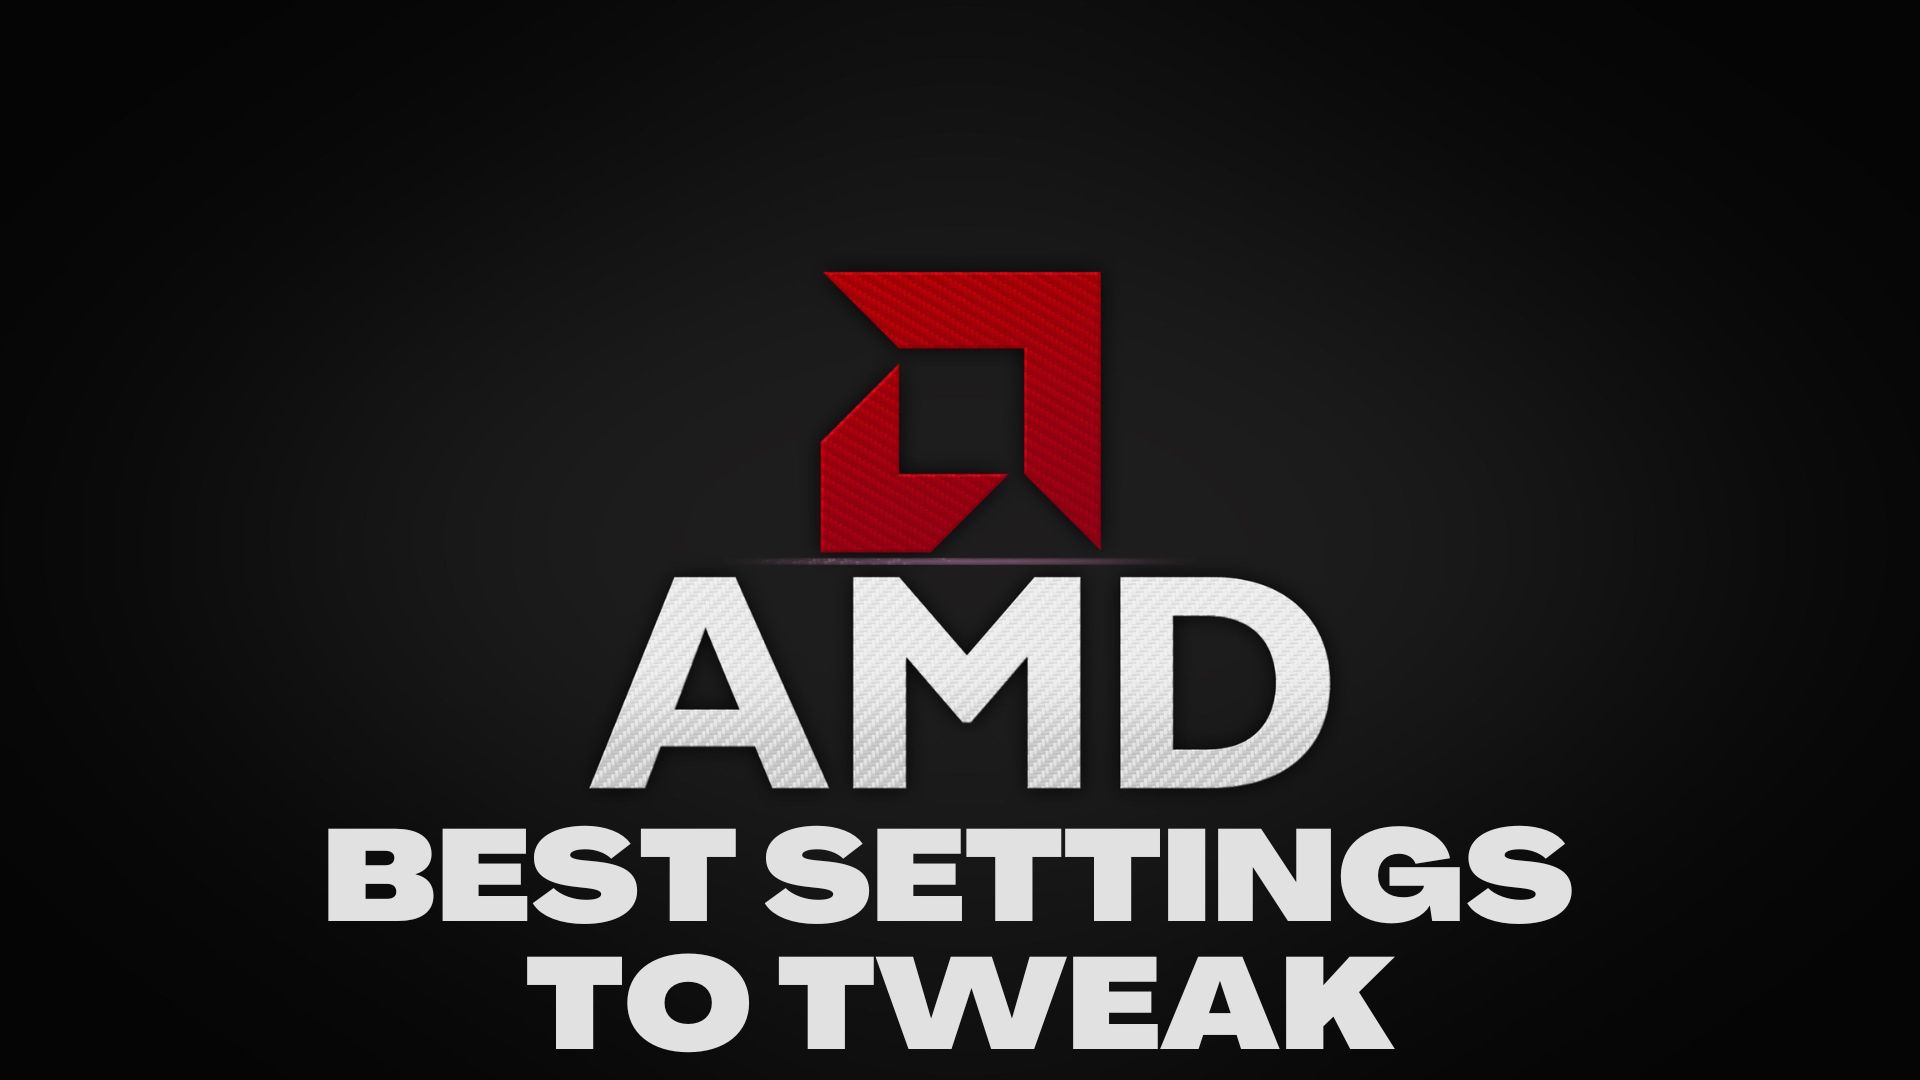 Best AMD Settings to Tweak